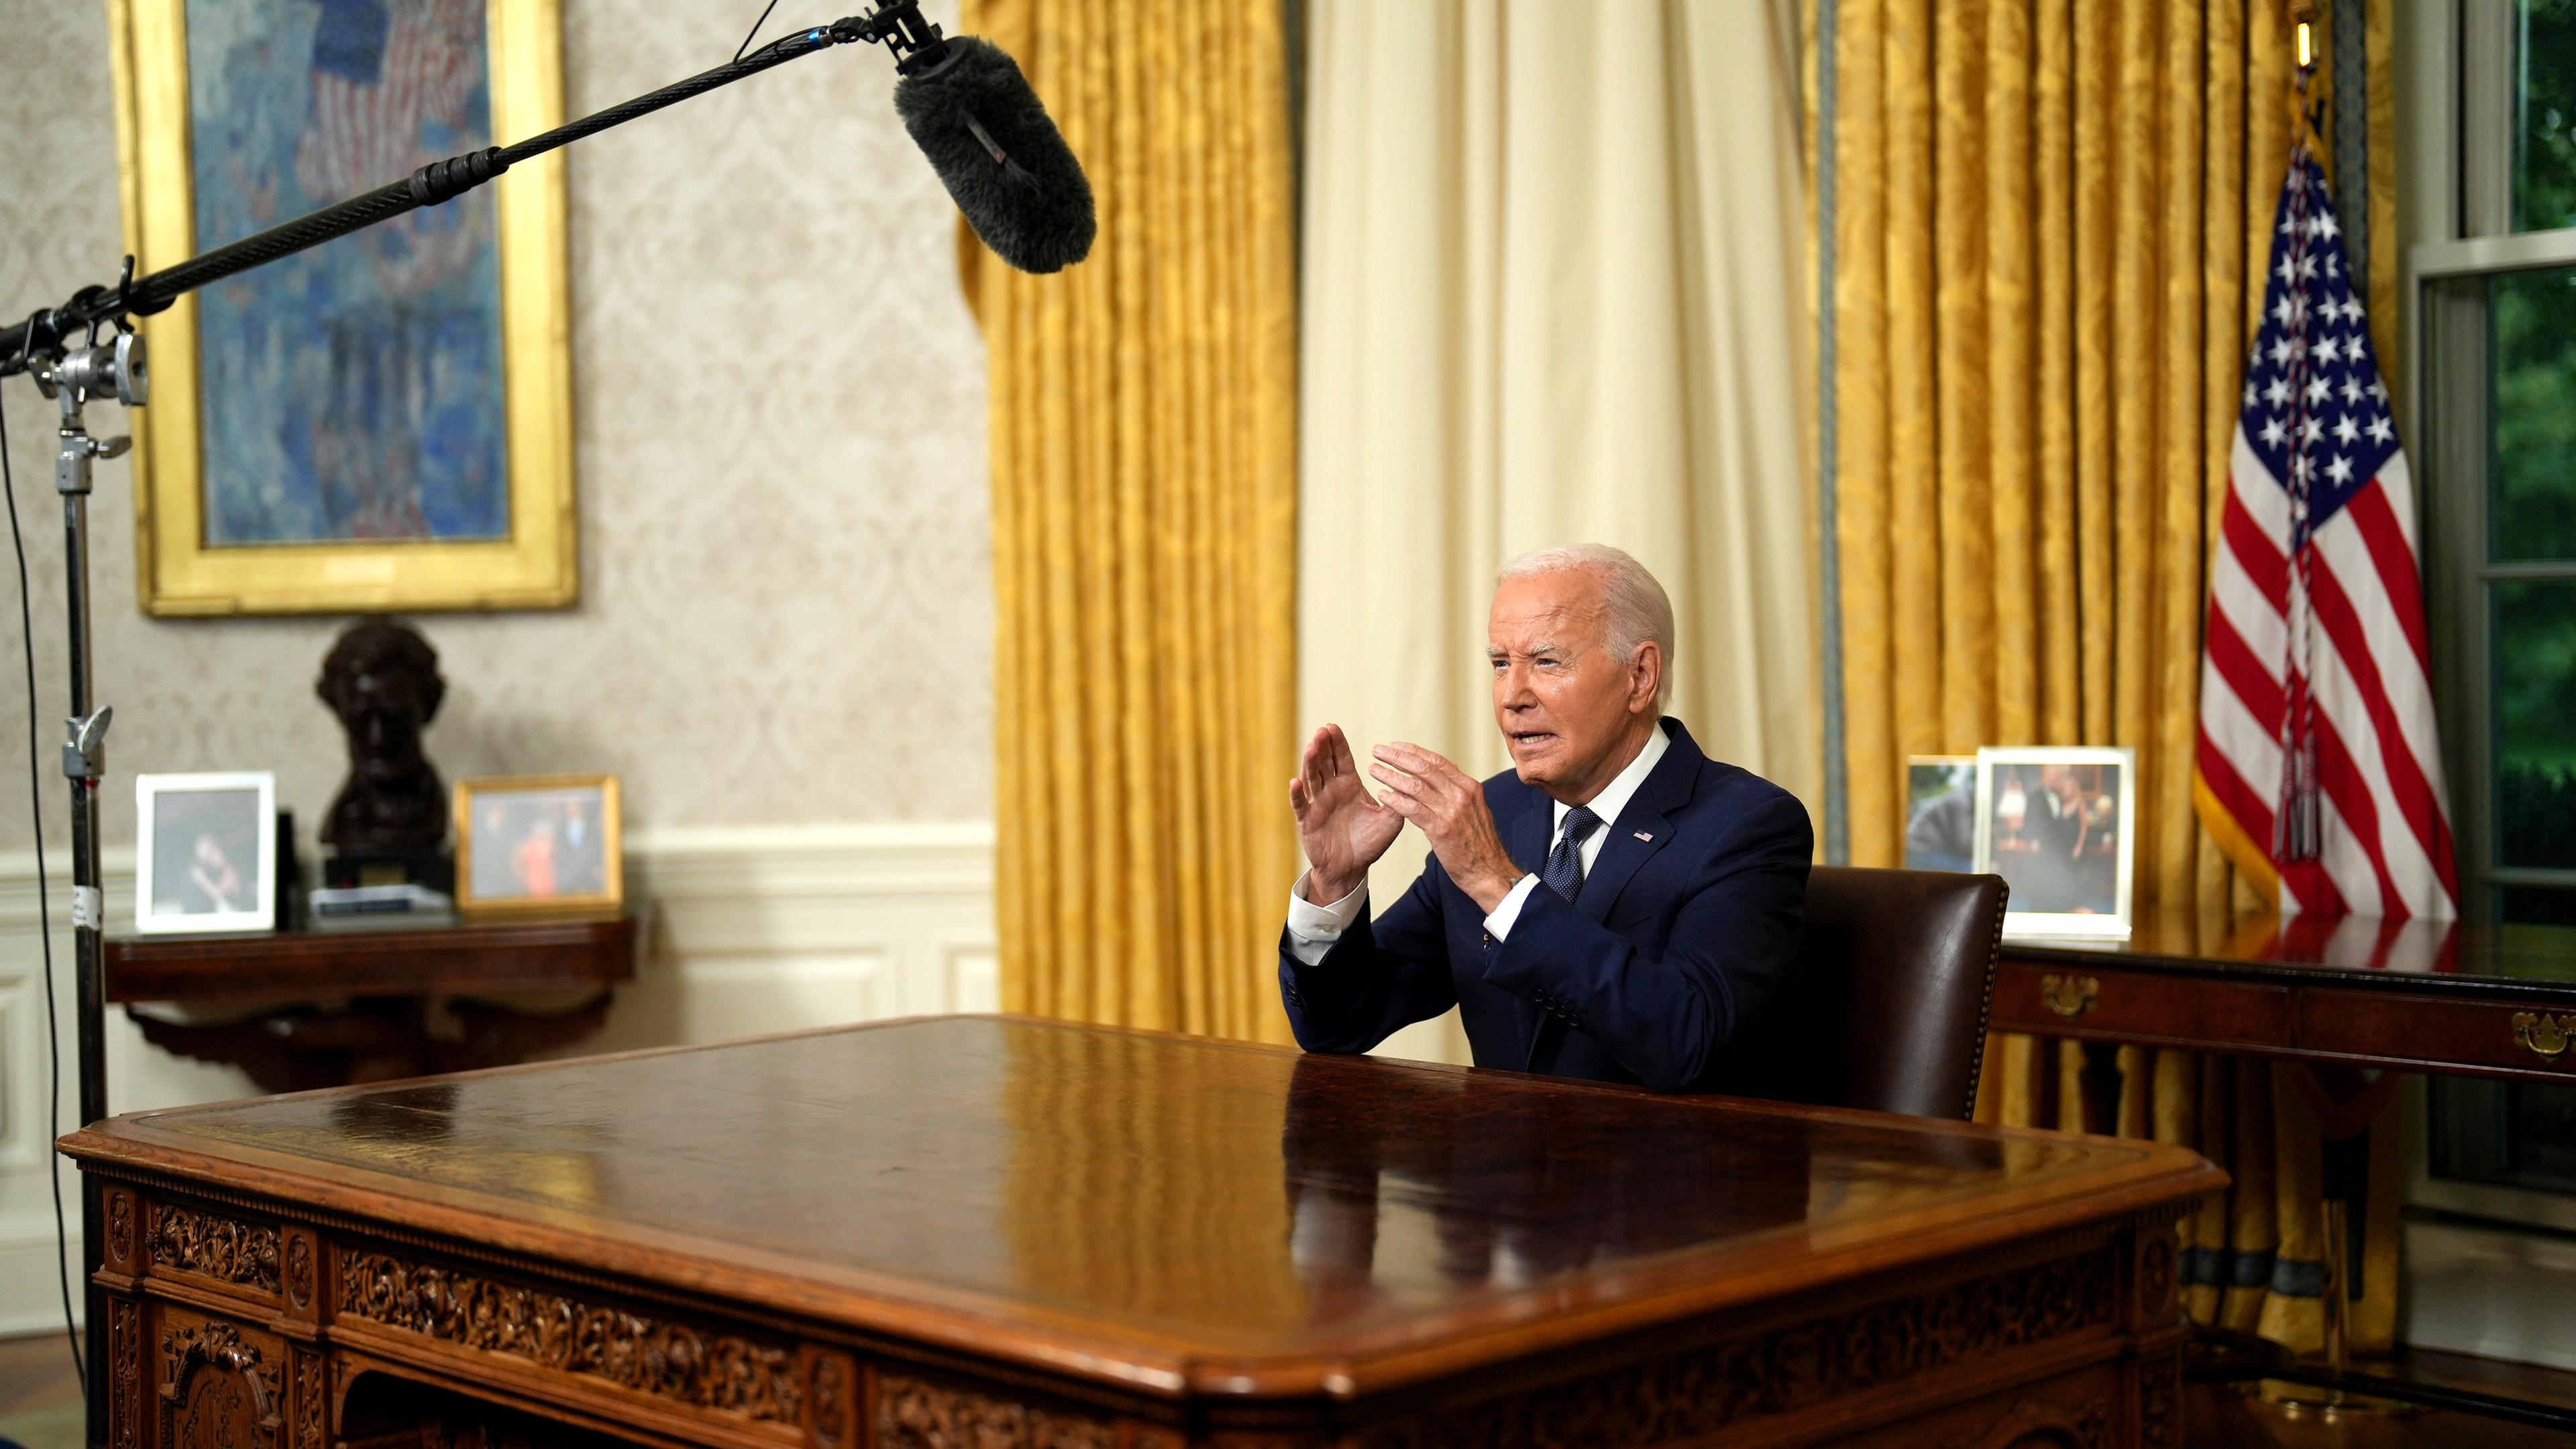 Joe Biden sitzt im Oval Office hinter seinem Schreibtisch und spricht fokussiert in Richtung der Kameras. Ein Mikrophonständer ist neben dem Schreibtisch zu sehen.